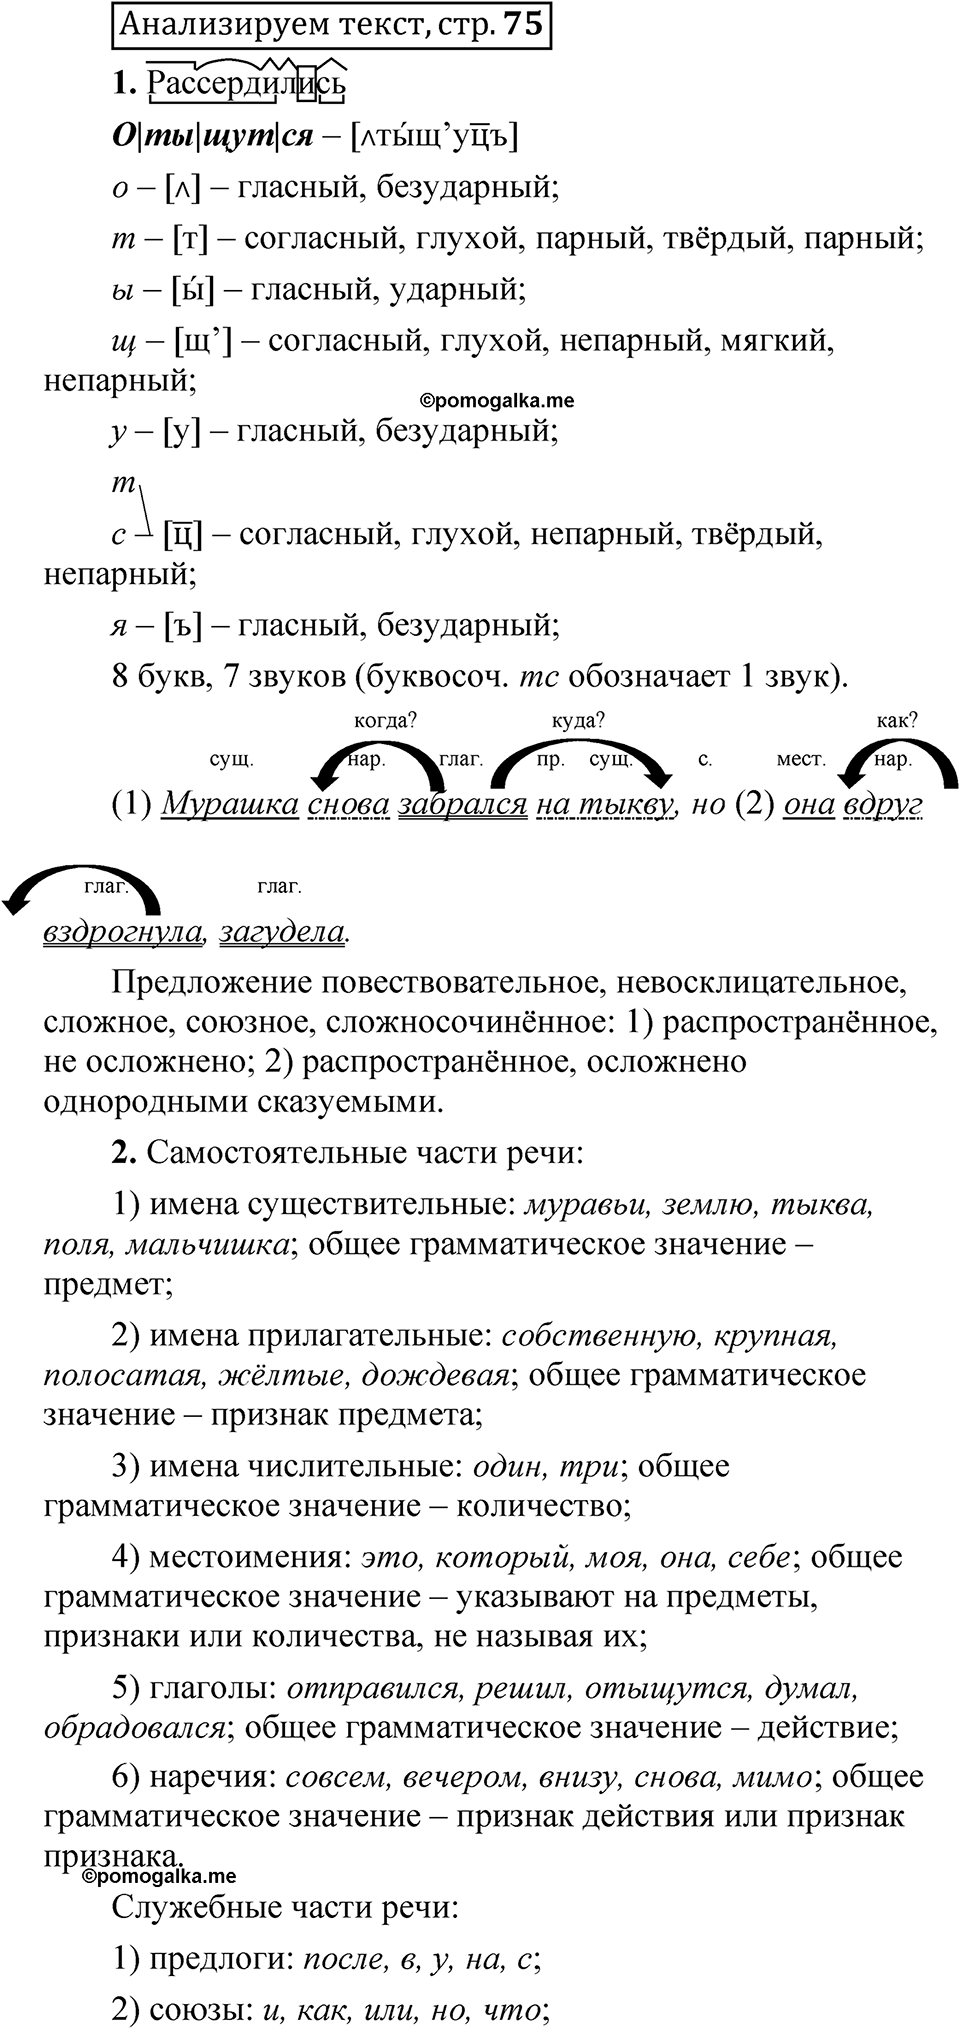 страница 74 Анализируем текст русский язык 5 класс Быстрова, Кибирева 2 часть 2021 год